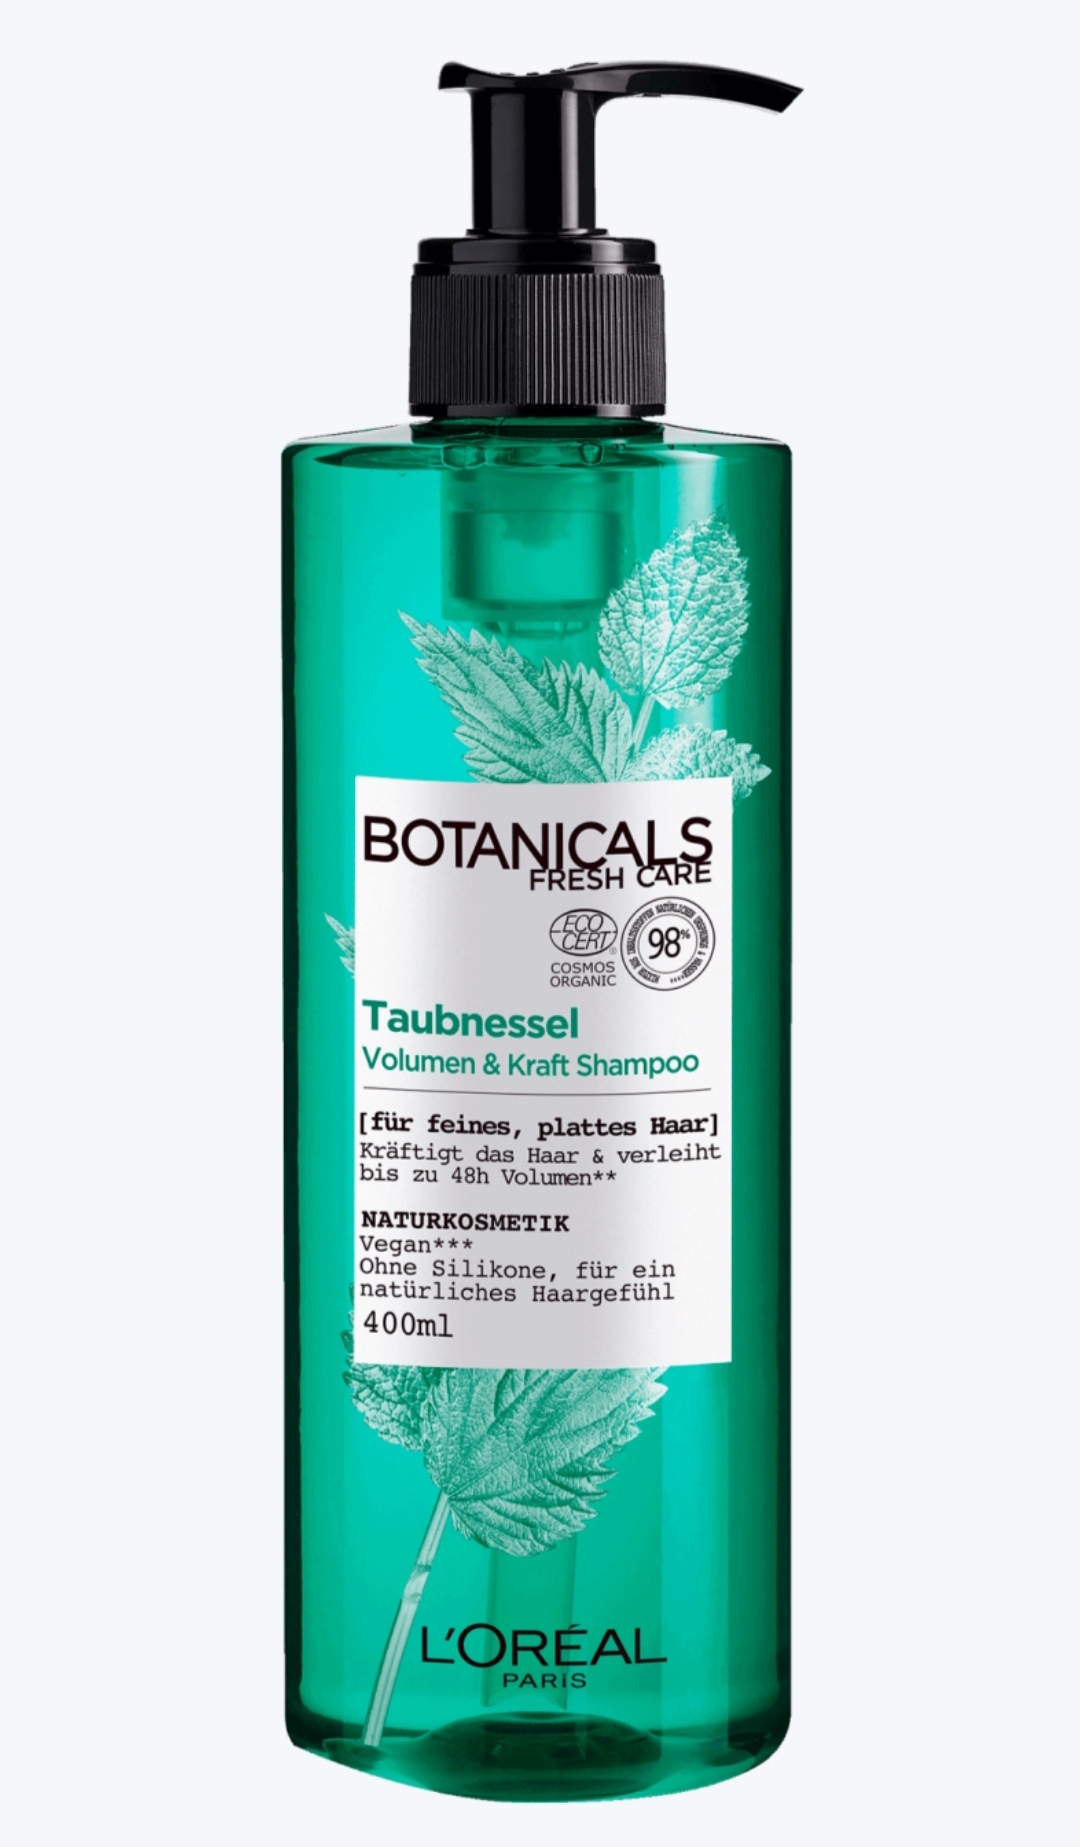 szampon botanicals fresh care opinie